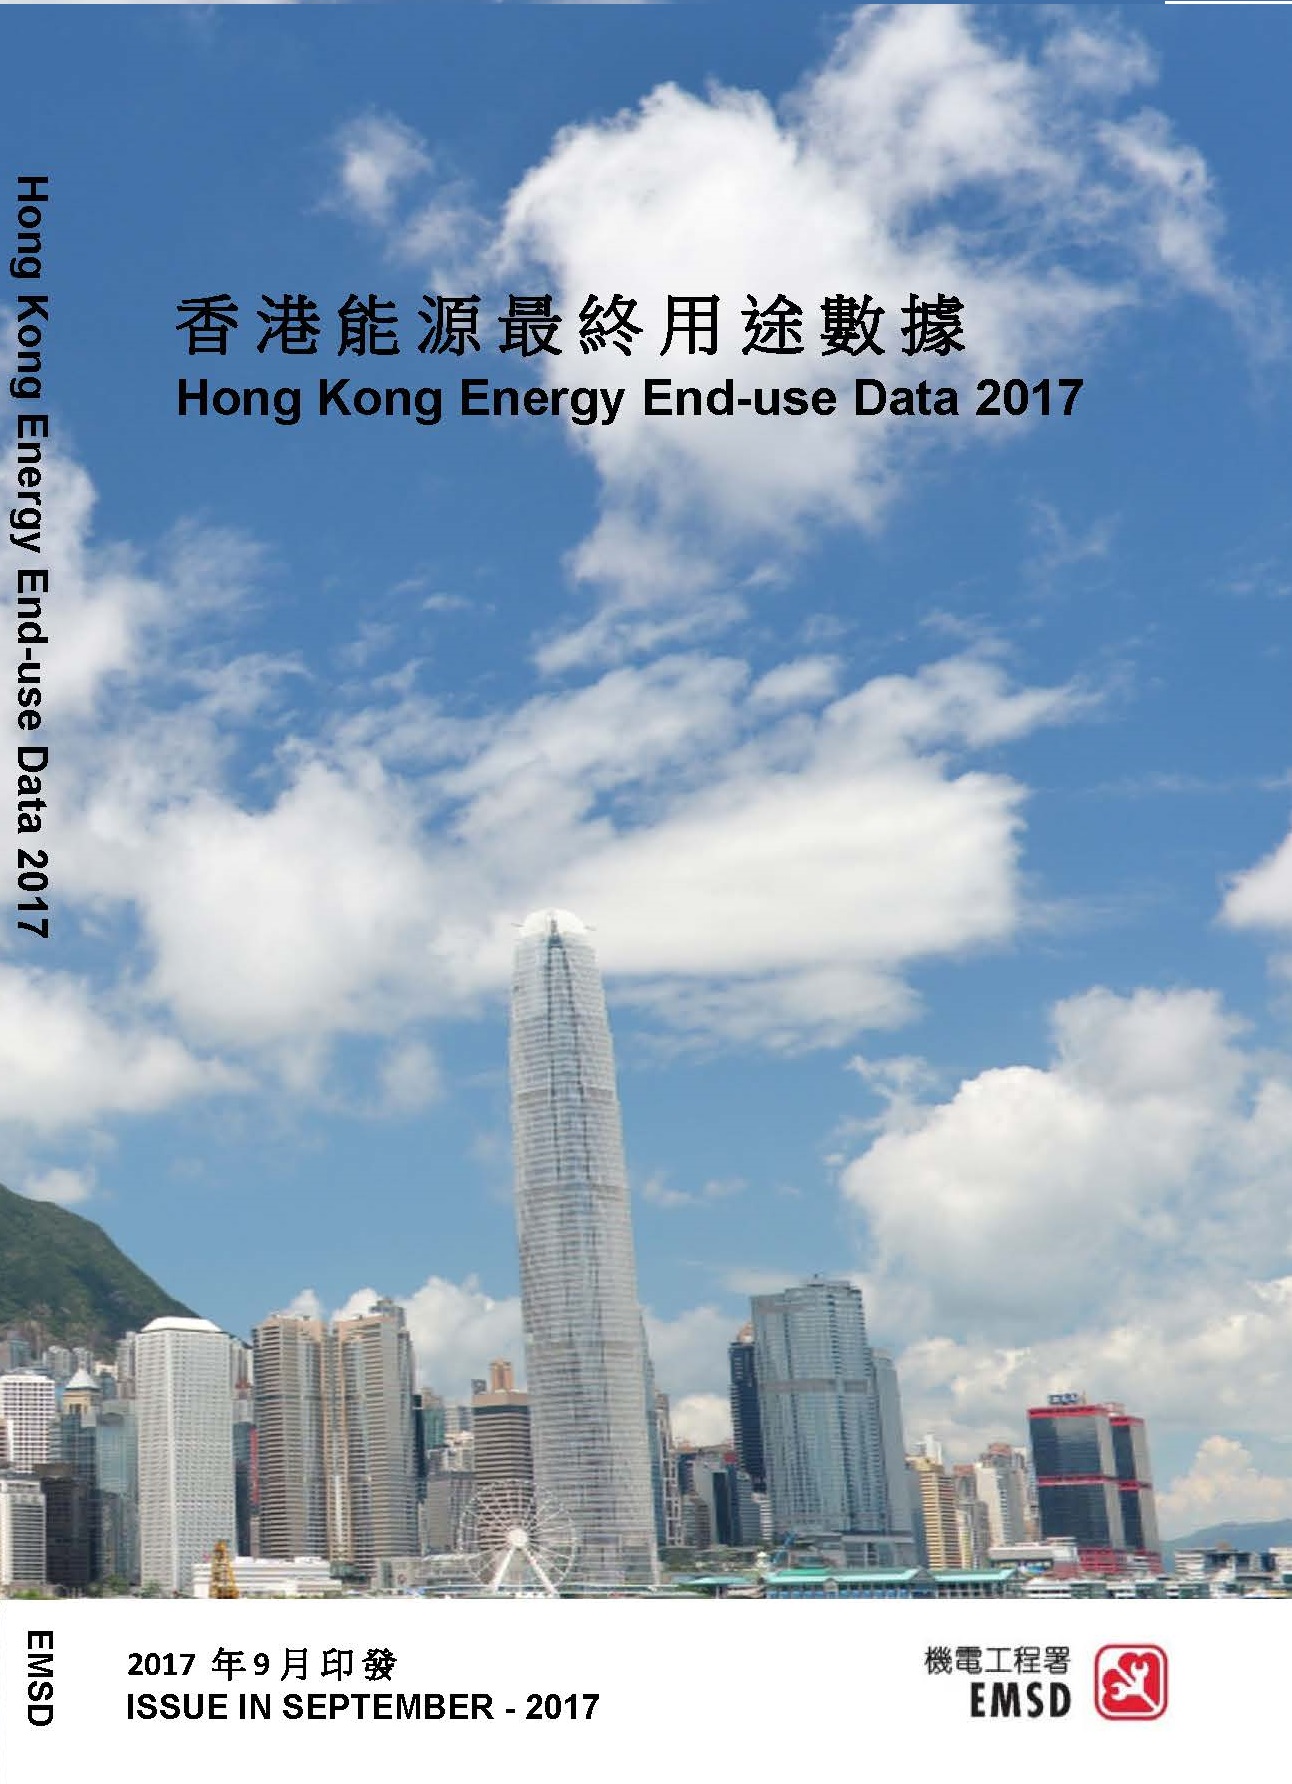 Hong Kong Energy End-use Data 2017